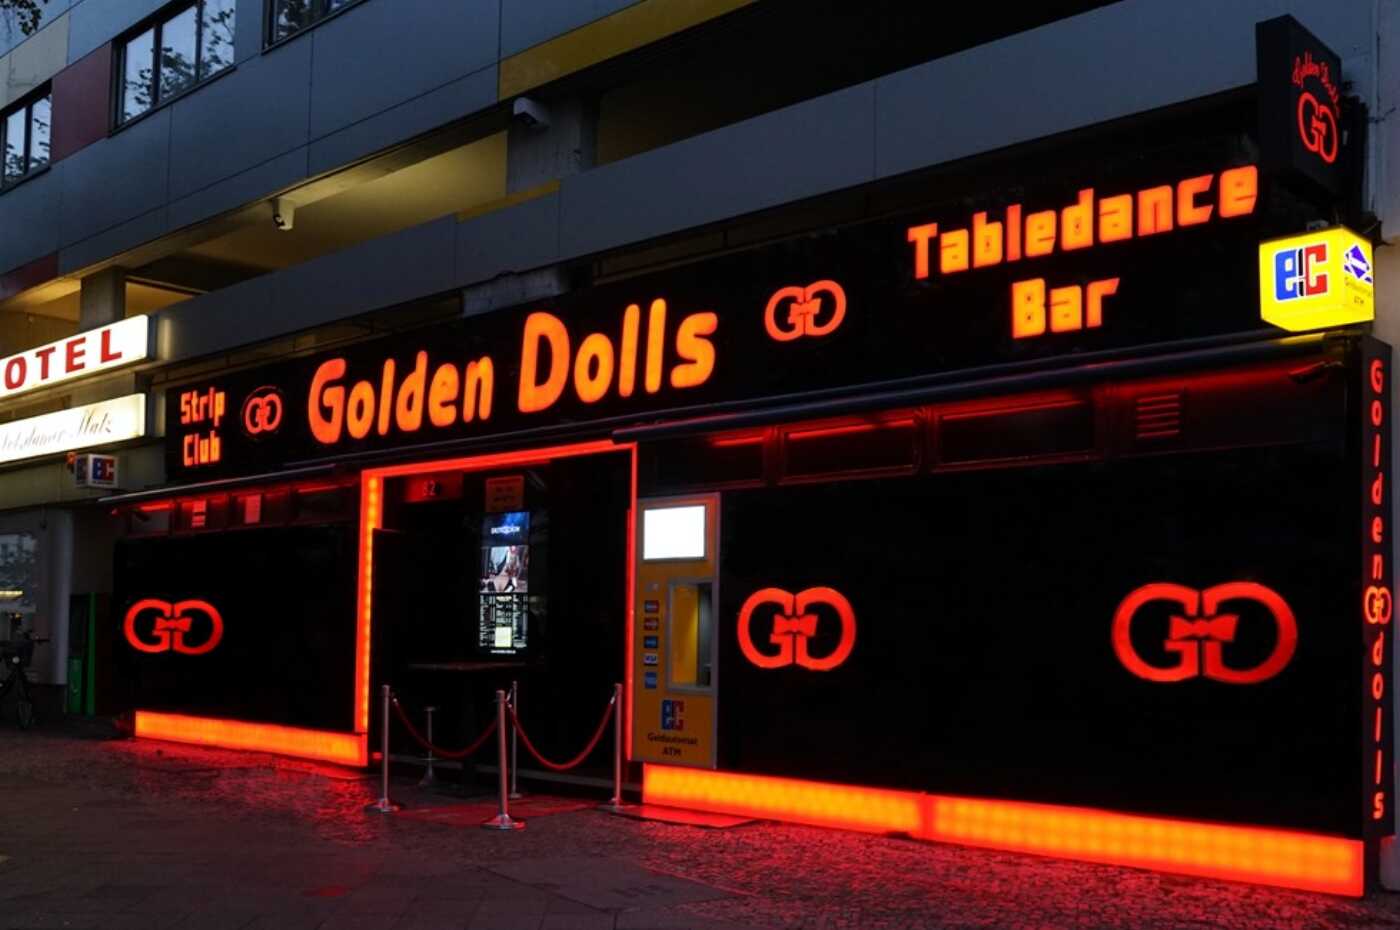 Der Eingang zum Tabledance Club Golden Dolls